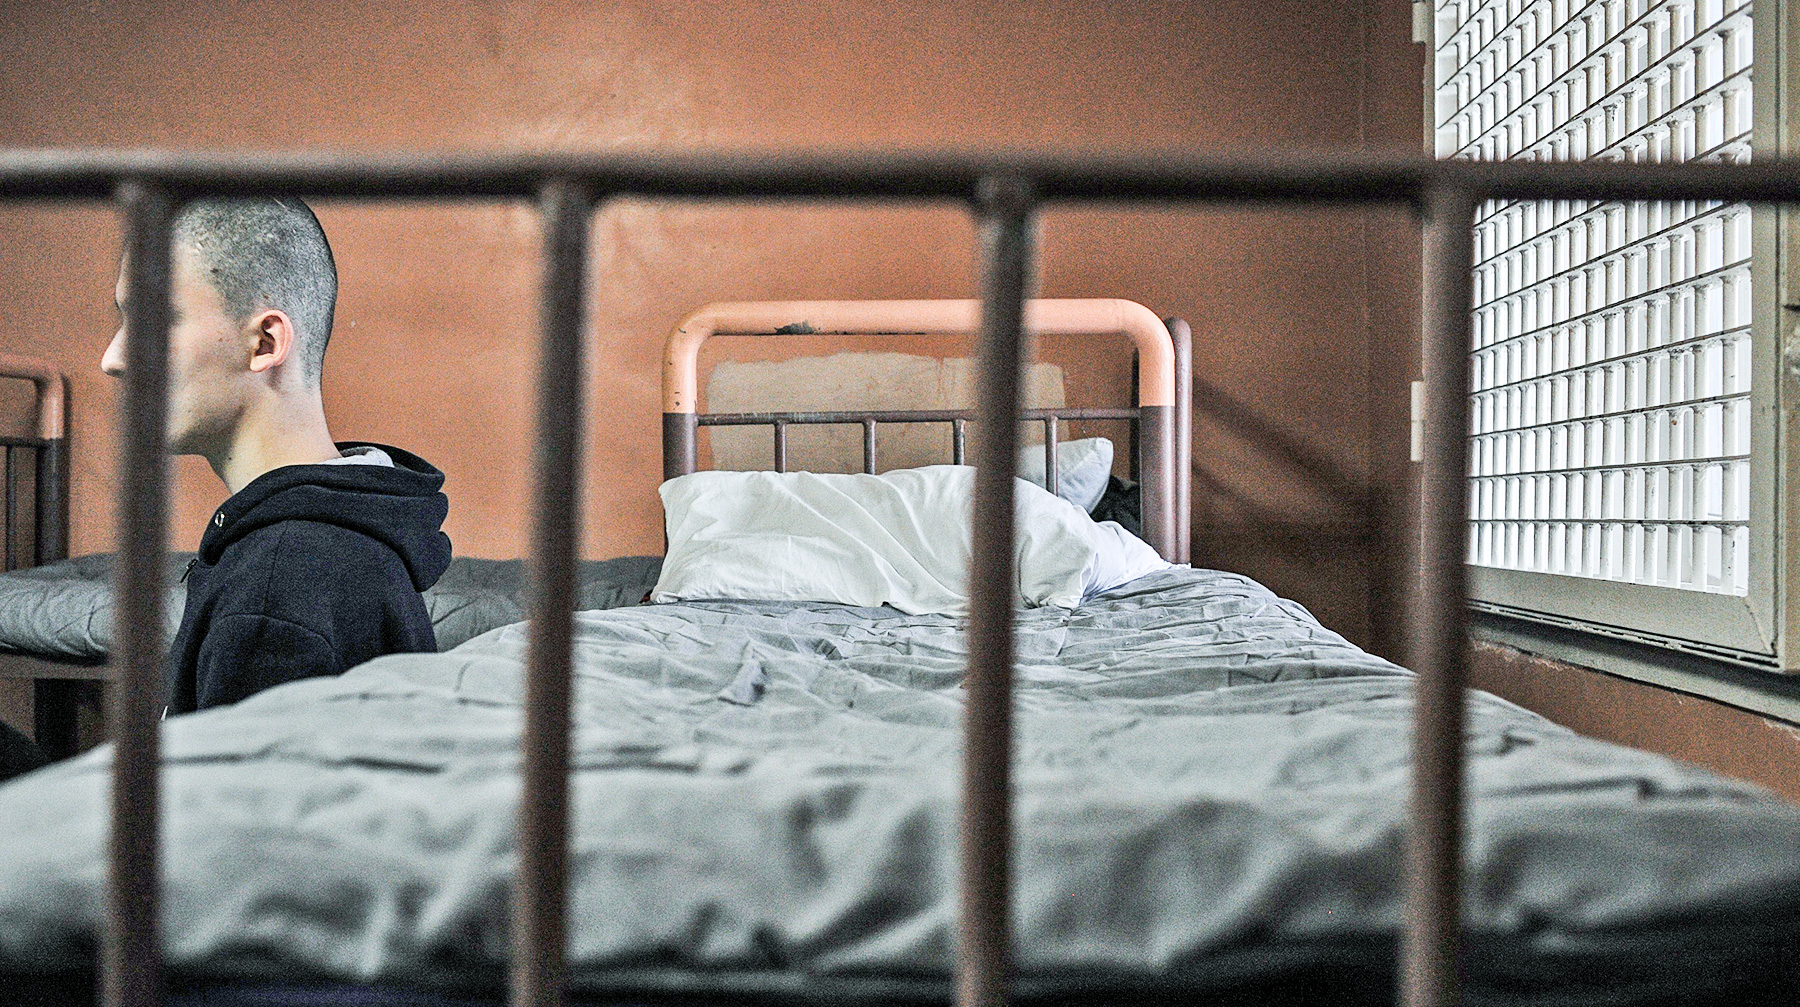 Руслан Горринг был признан виновным по делу о мошенничестве в особо крупном размере Фото: © Агенство Москва / Любимов Андрей